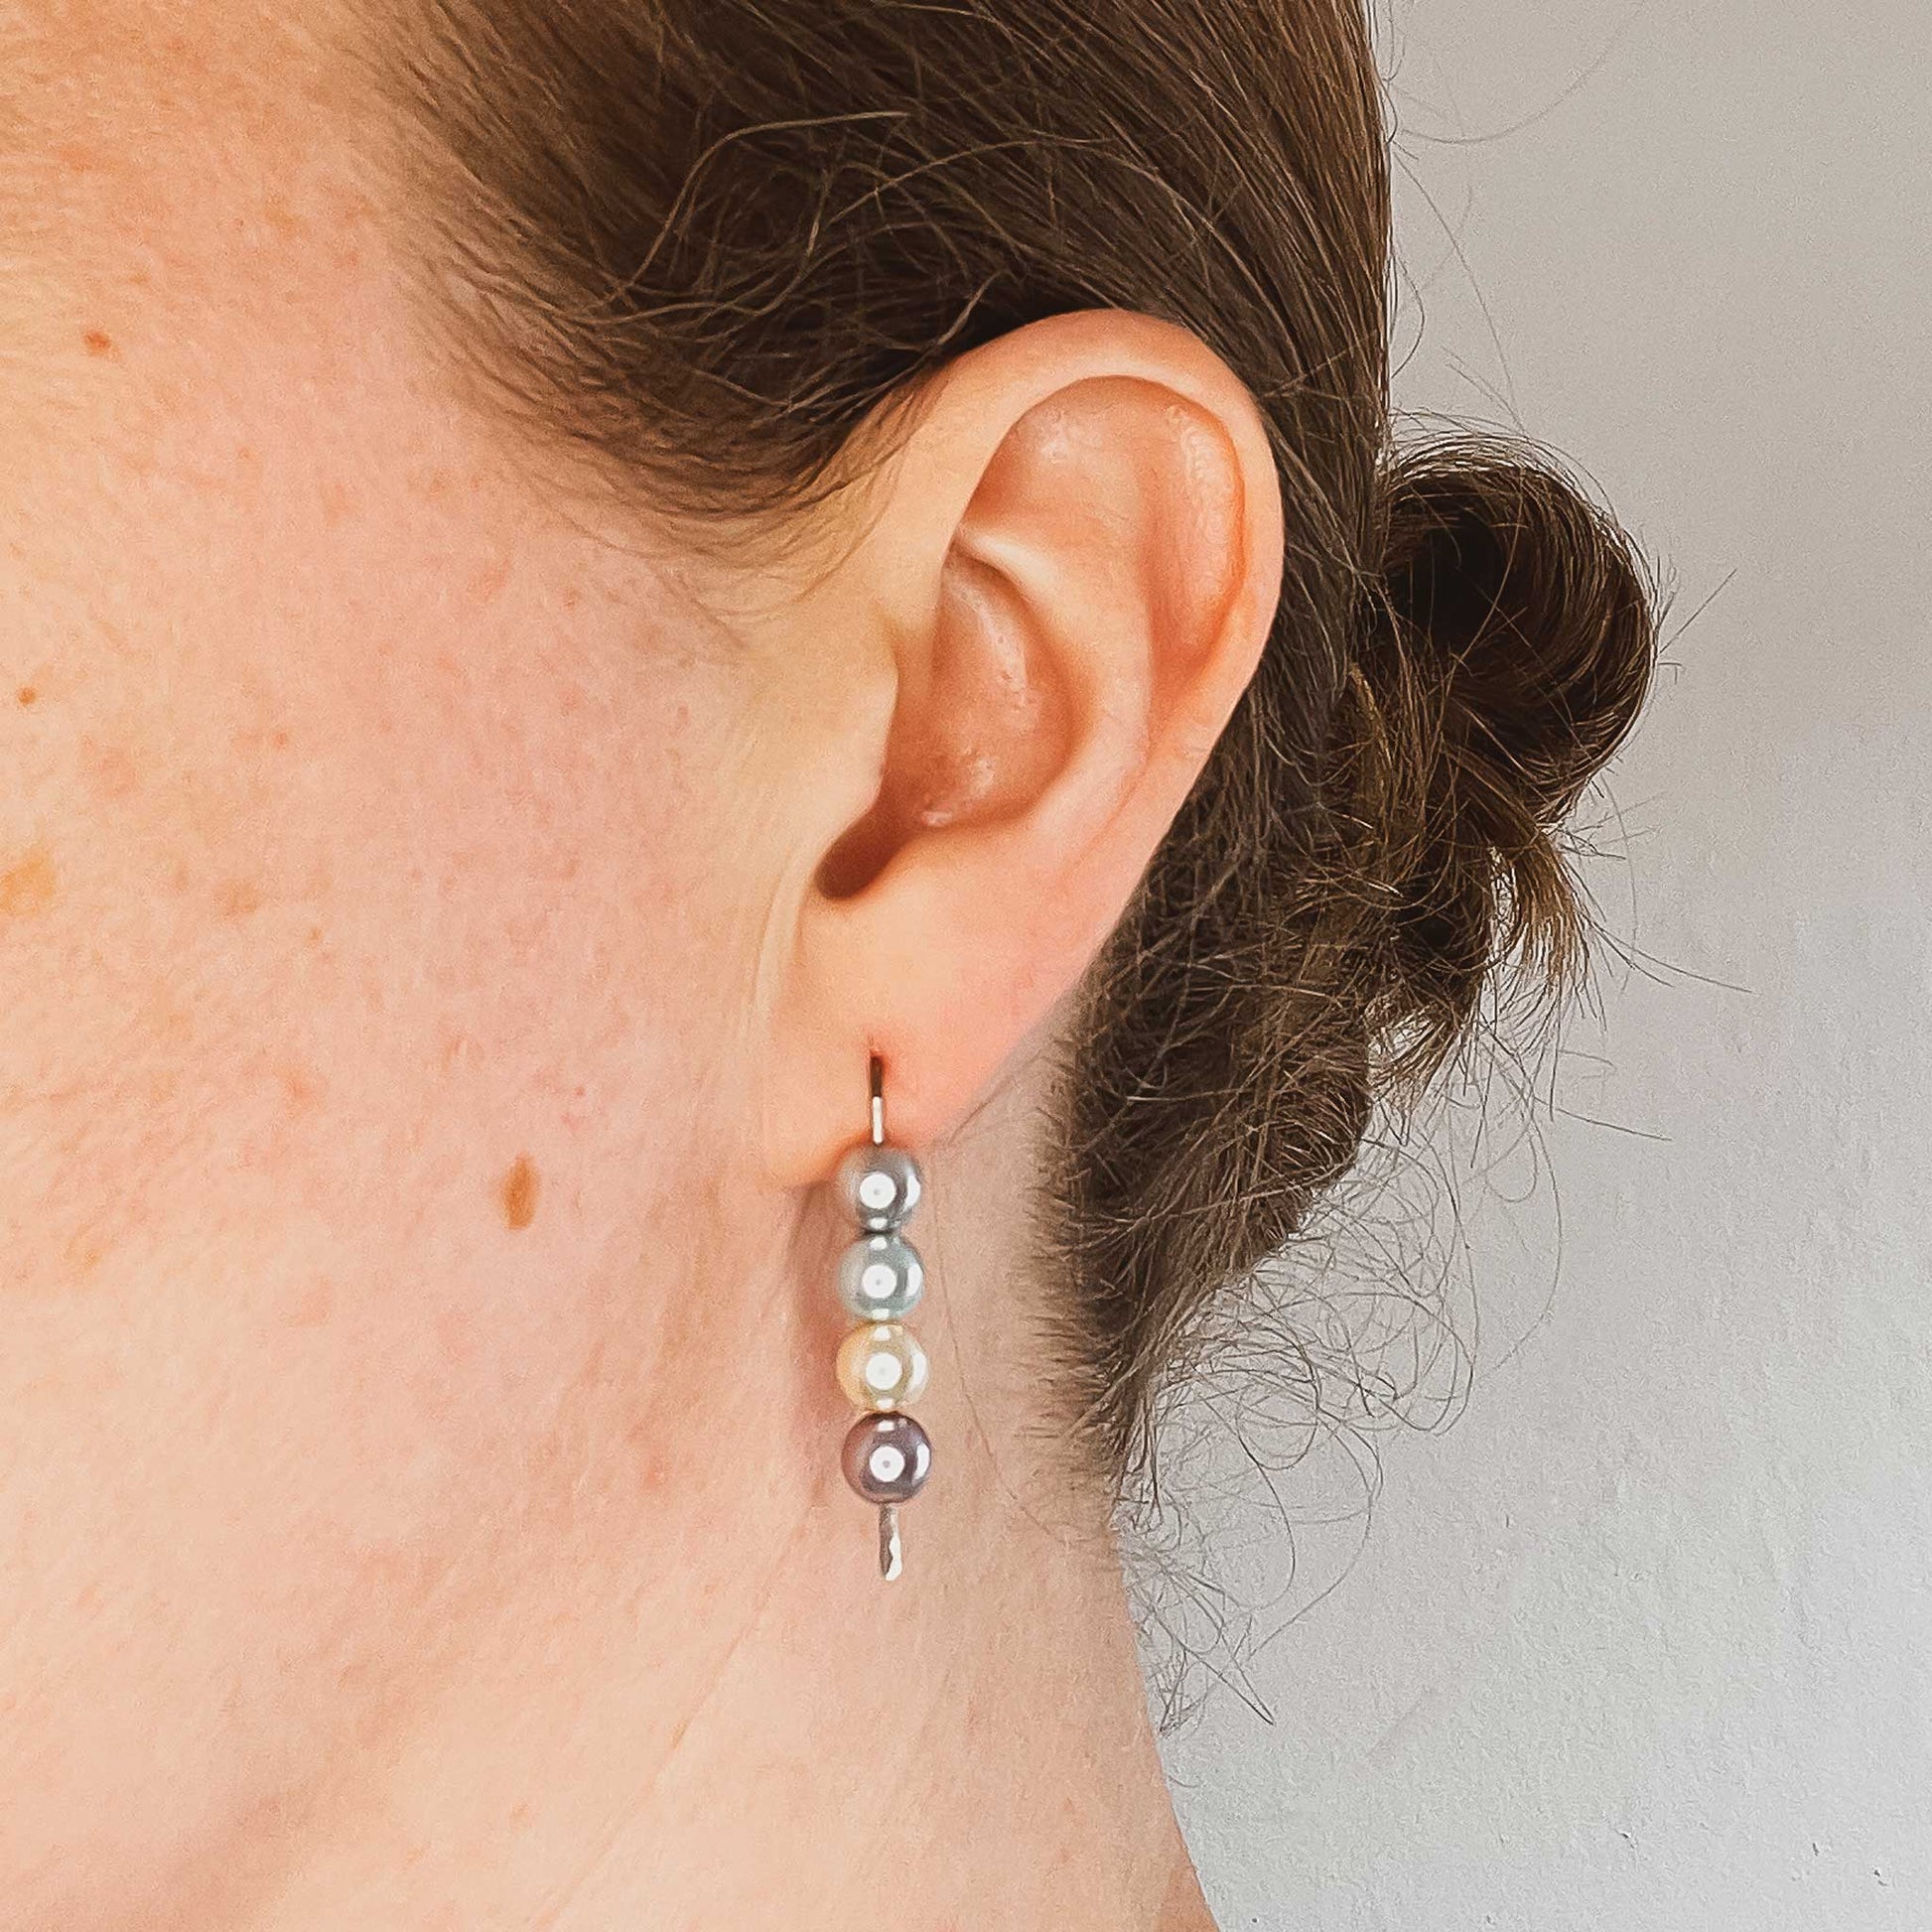 Woman wearing faux pearl stack earring in earlobe